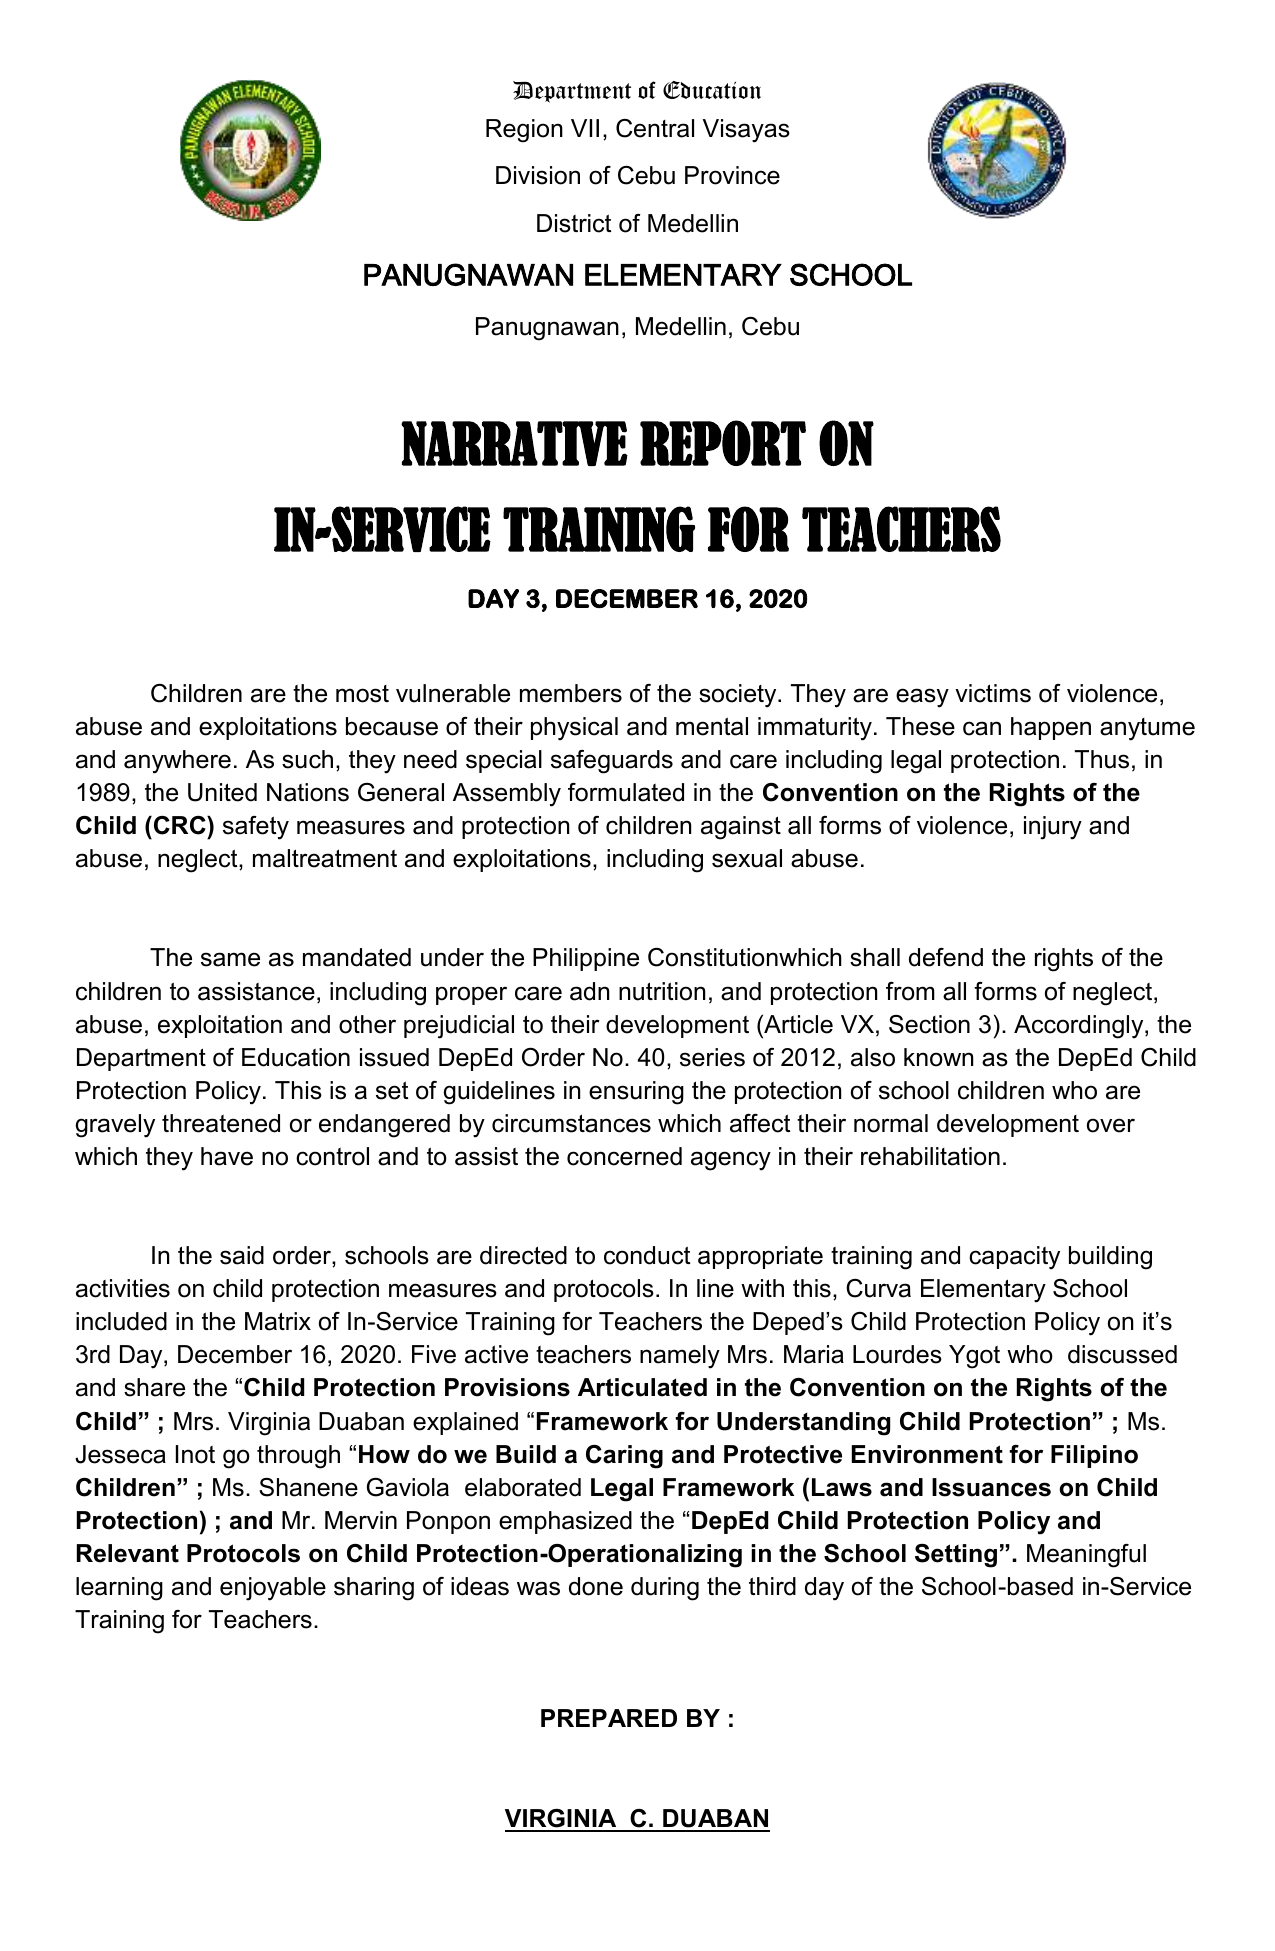 example of narrative report in school